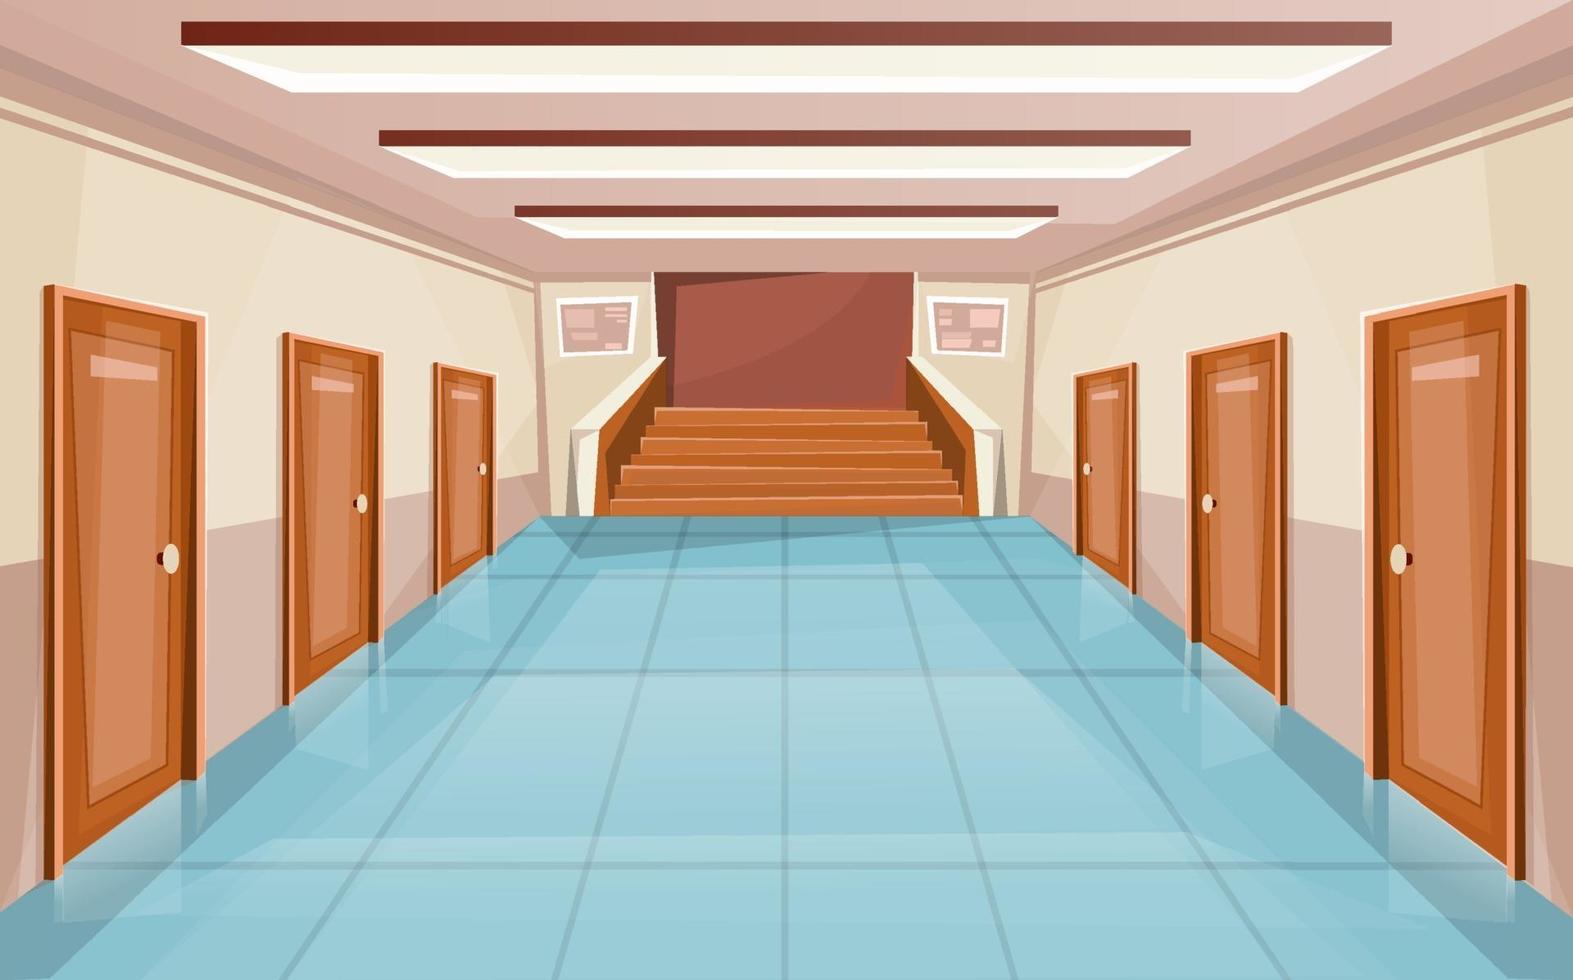 skolkorridor eller universitetsinredning med dörrar och trappa vektor